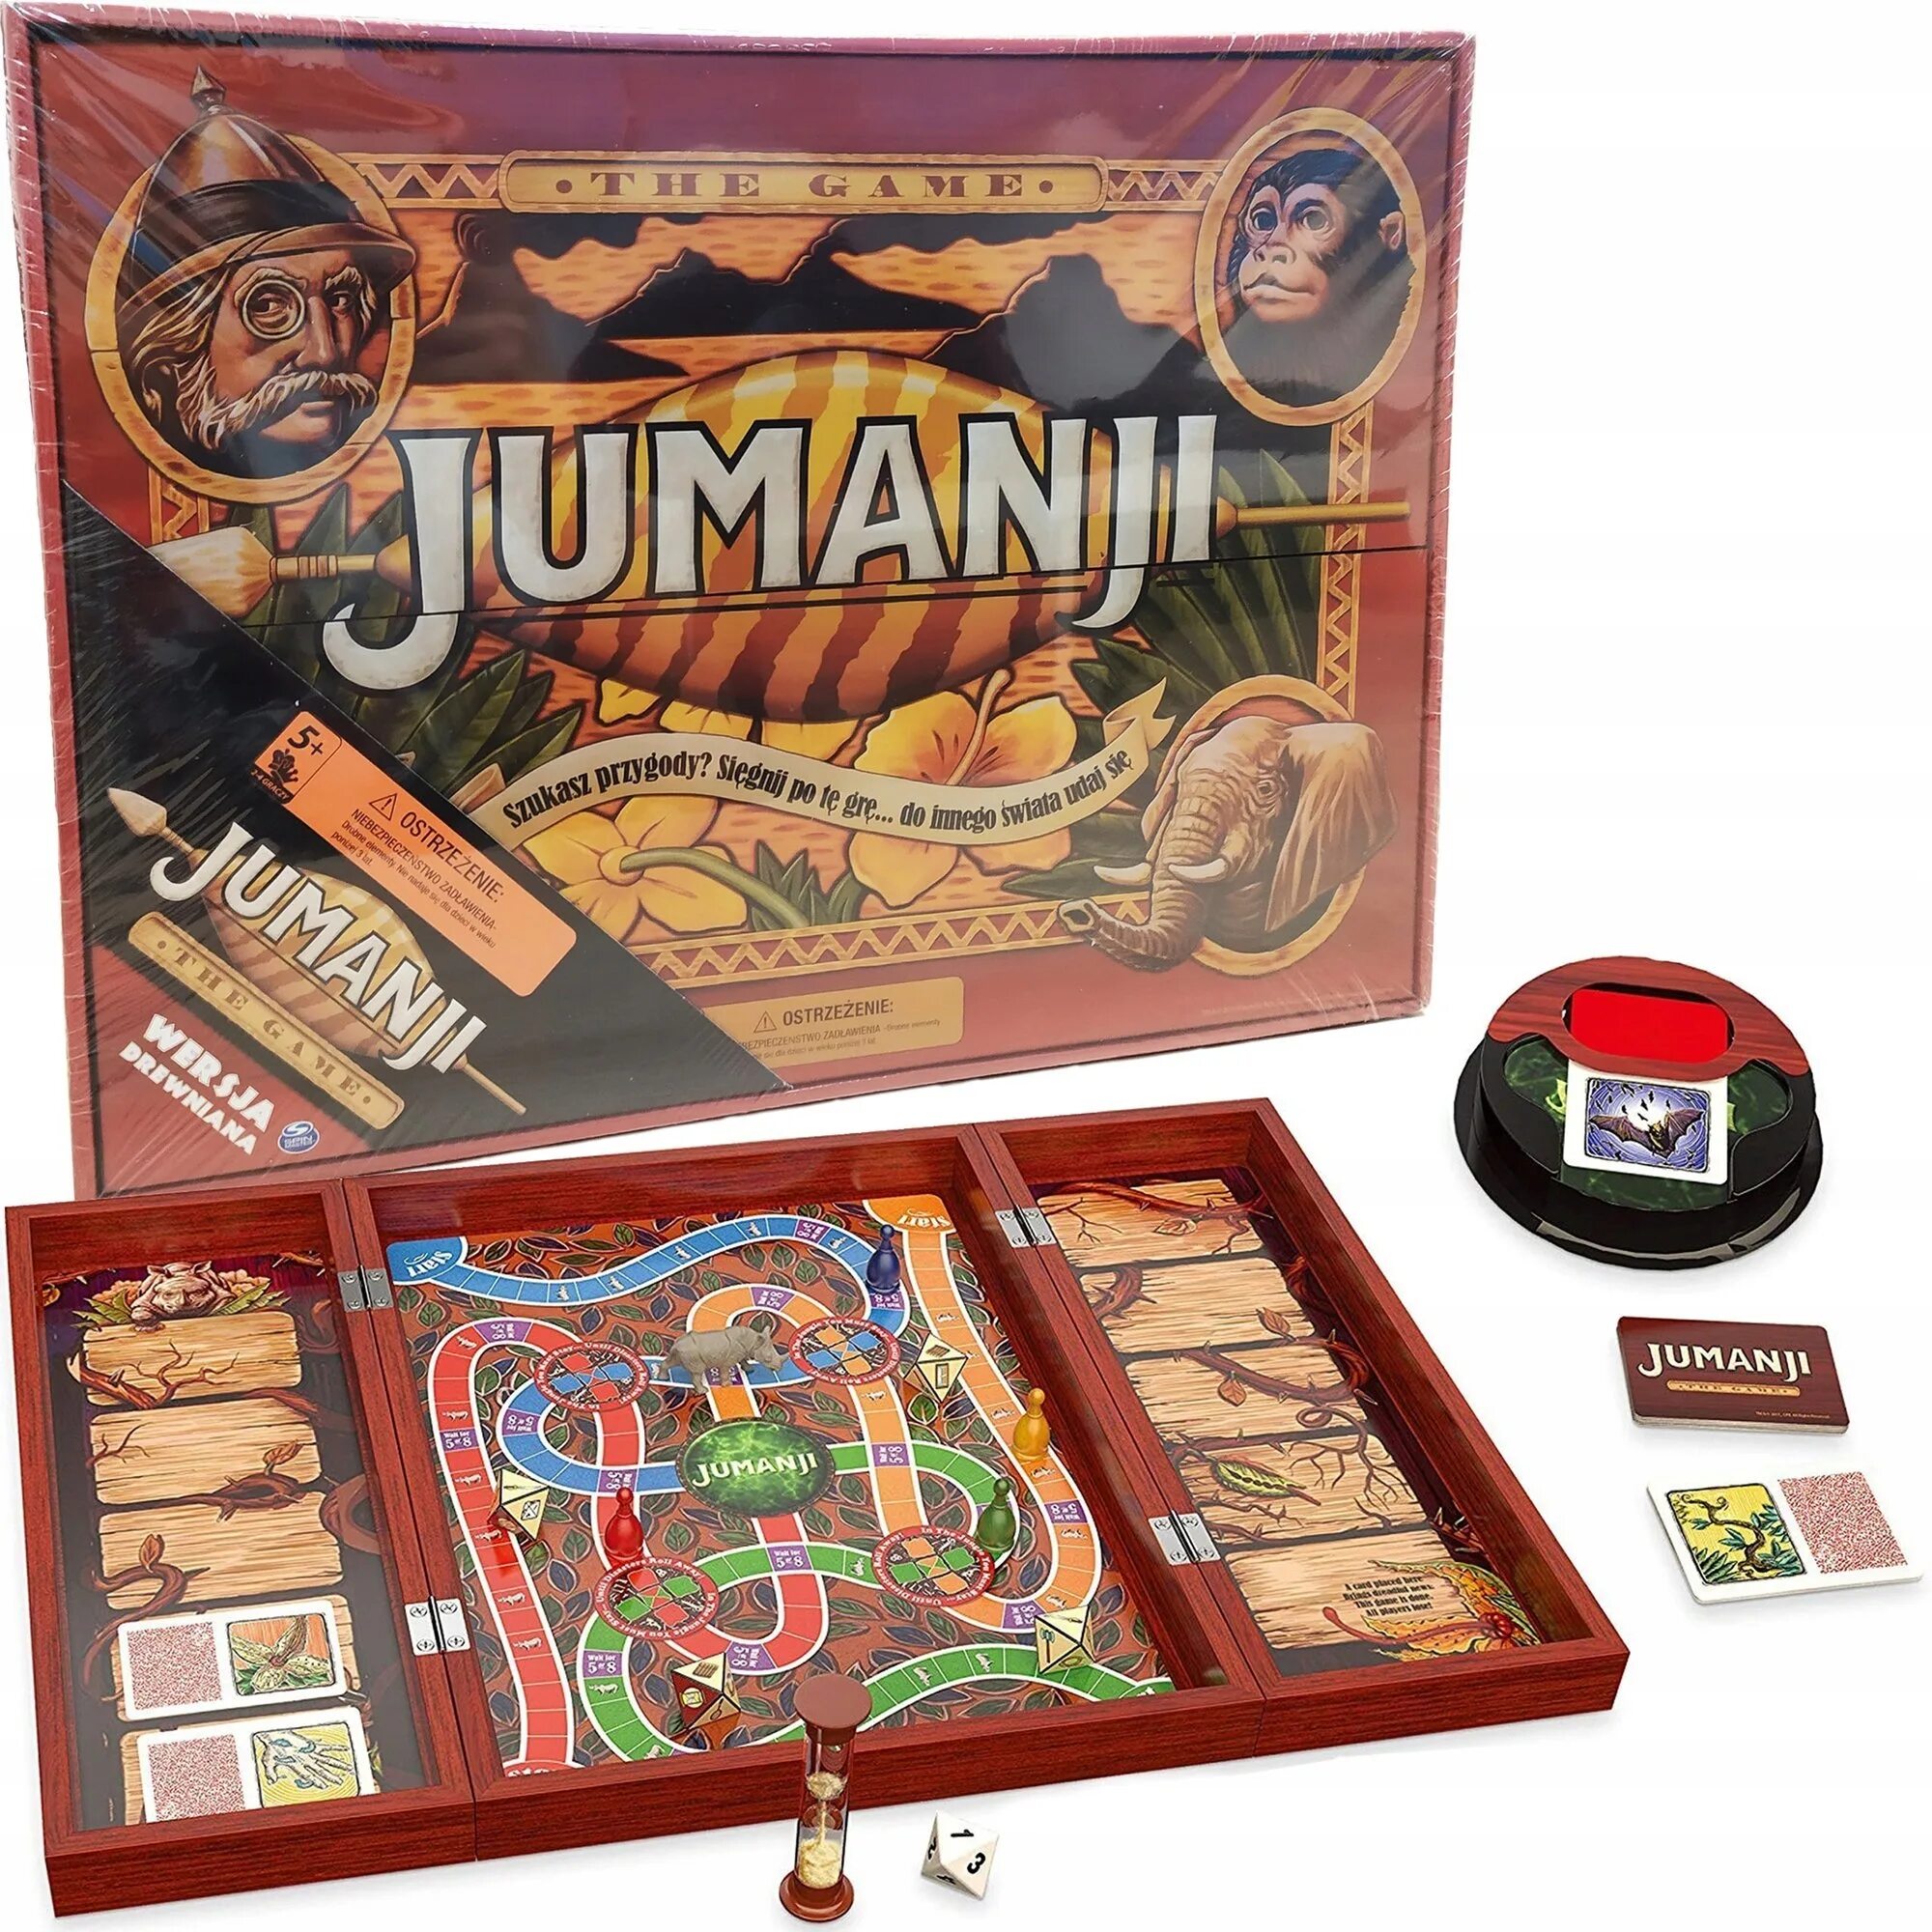 Настольная игра Джуманджи. Джуманджи настолка. Джуманджи деревянная игра. Коробка игры Джуманджи.